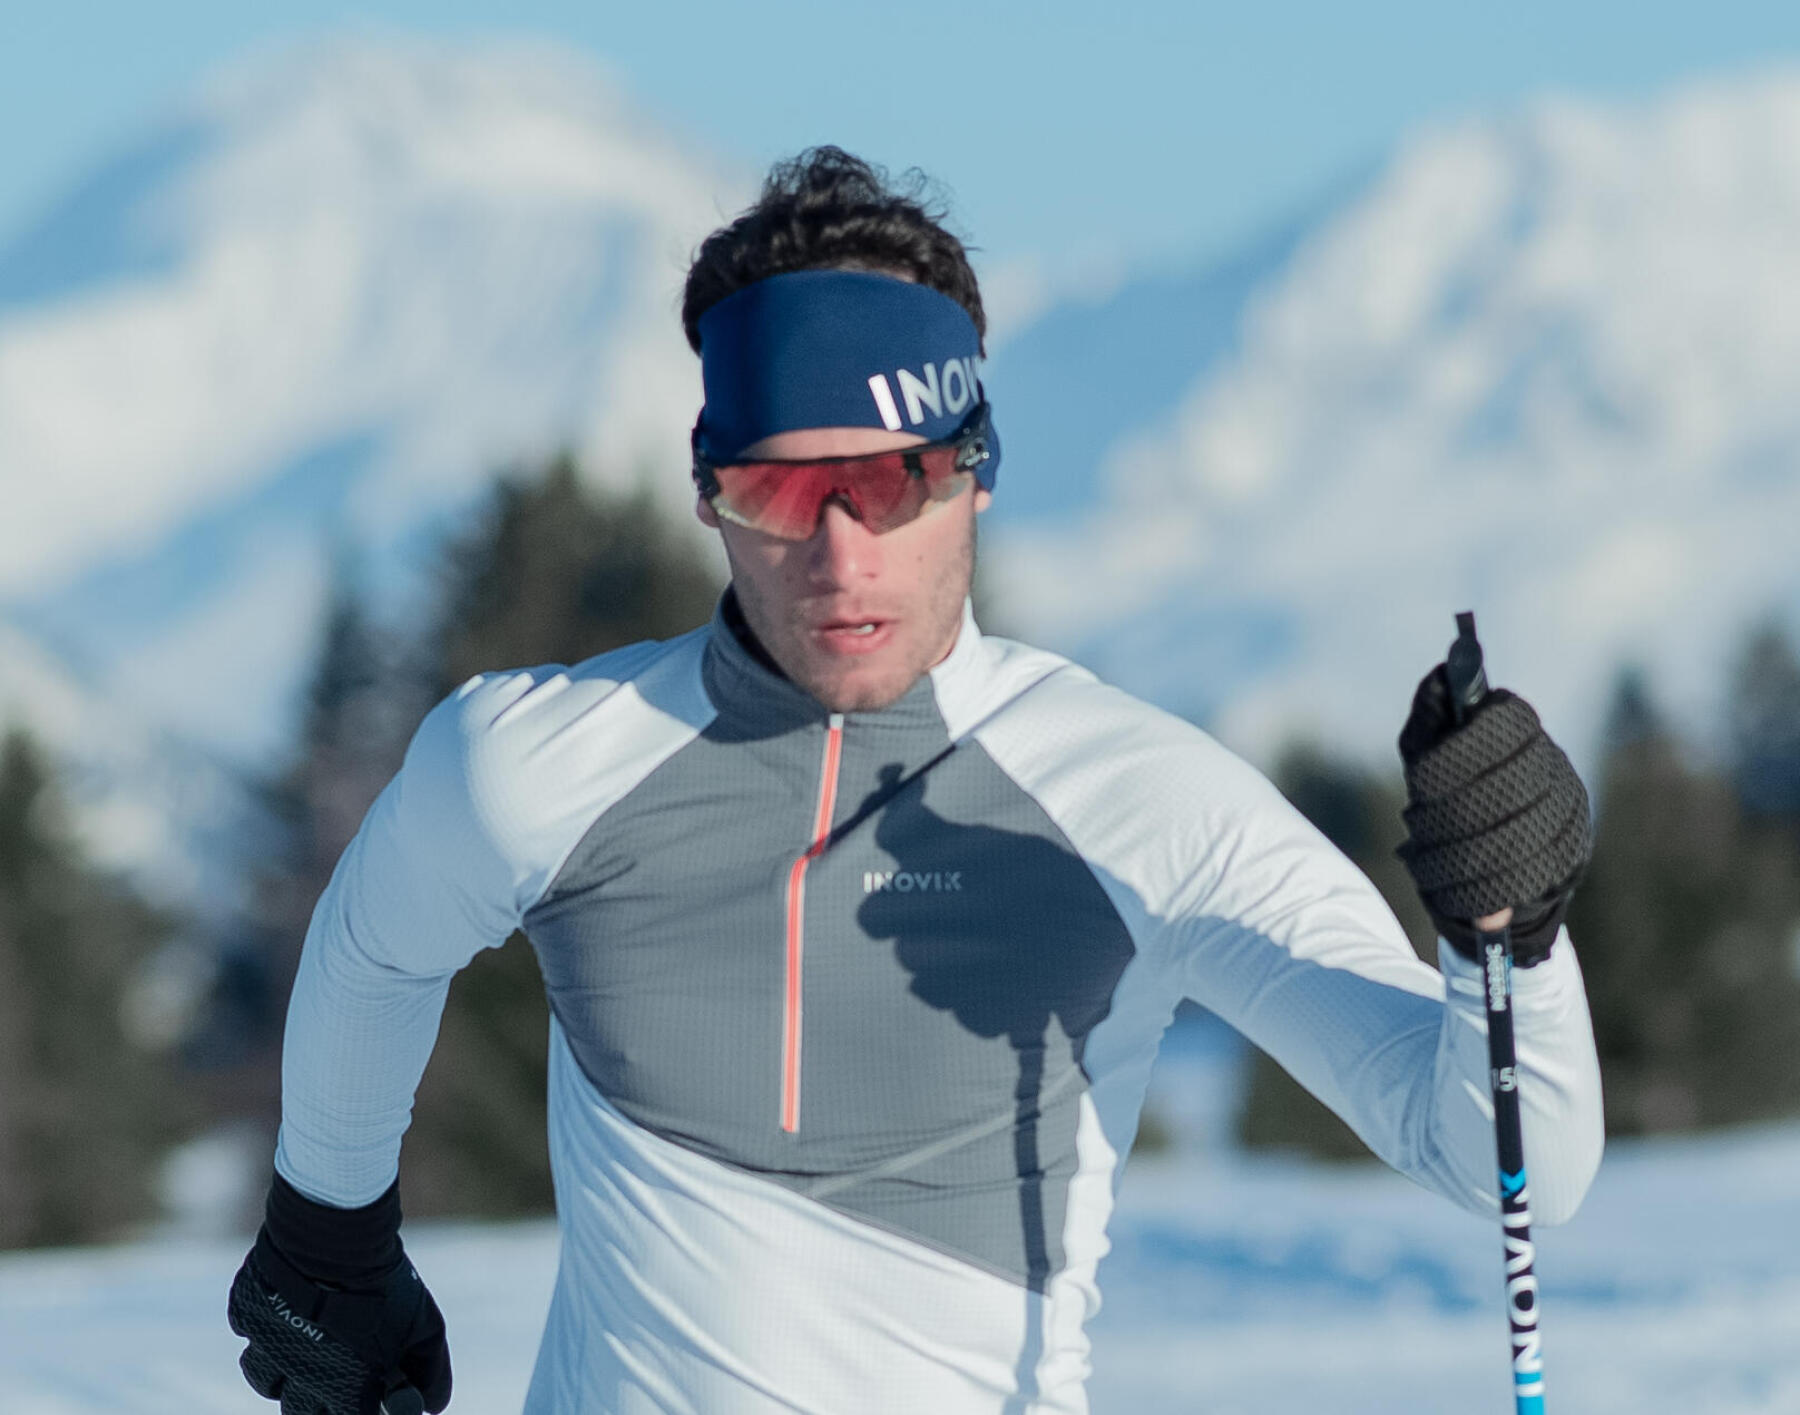 [Test] S'équiper pour le ski alpin